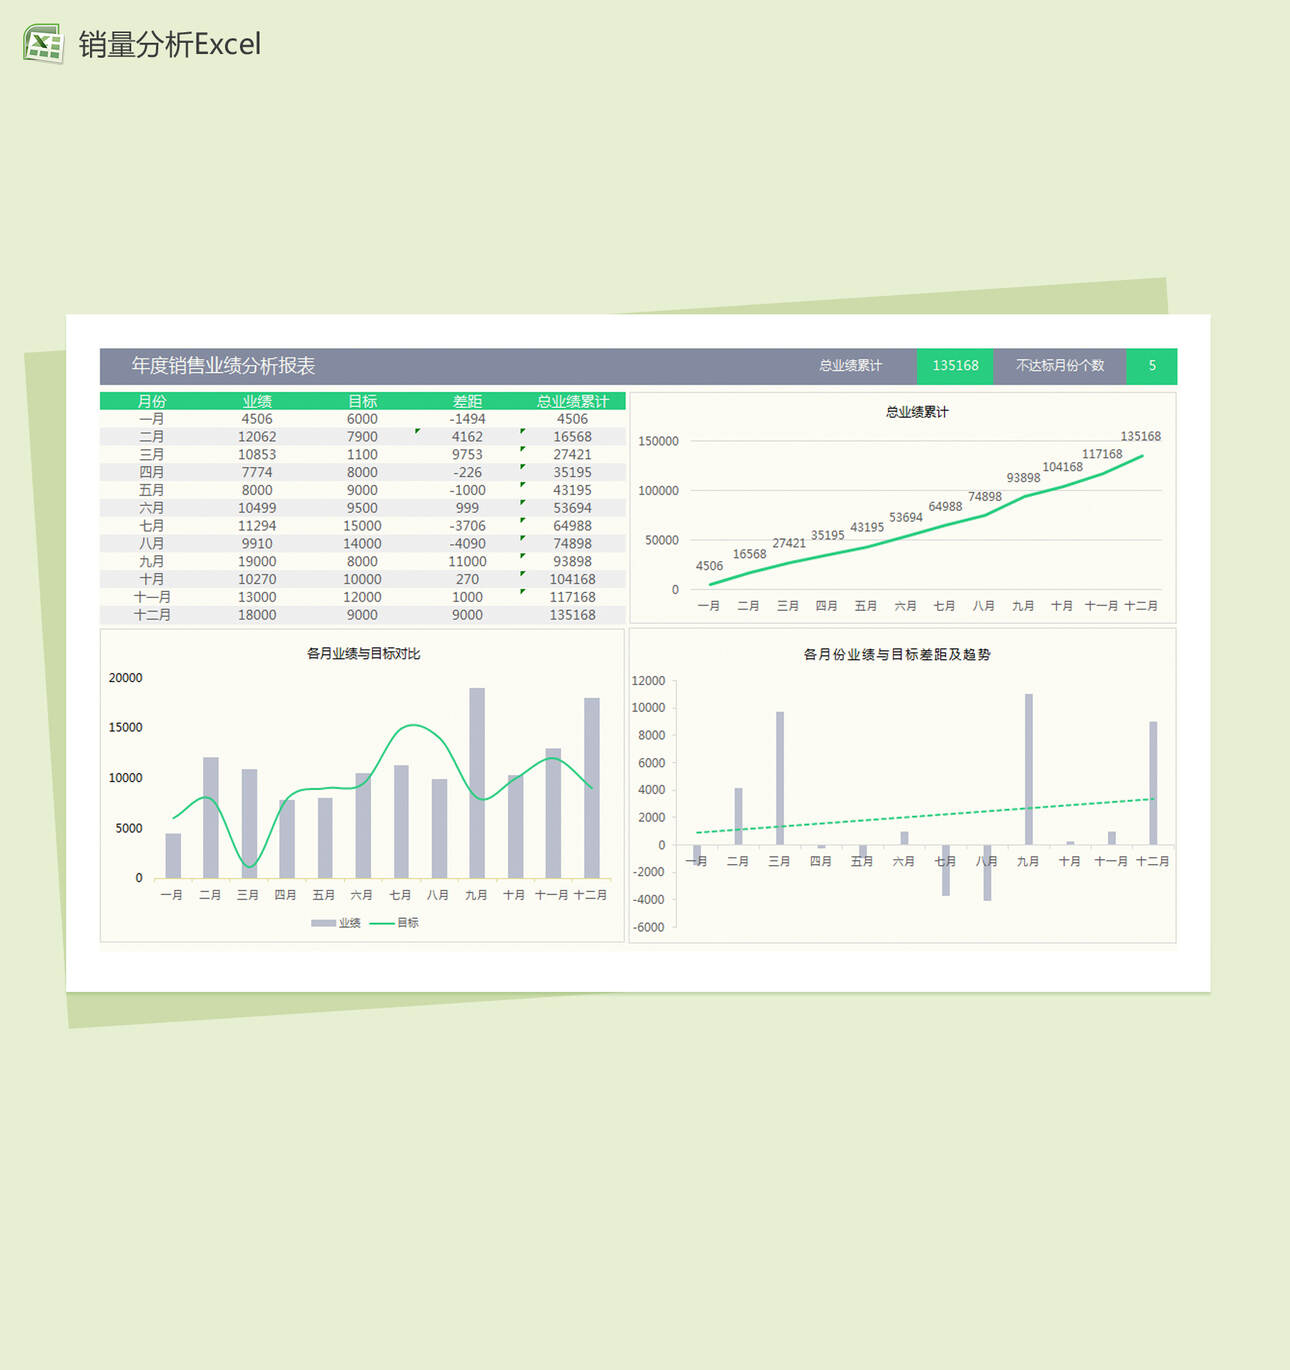 年度销量业绩分析报表Excel图表模板